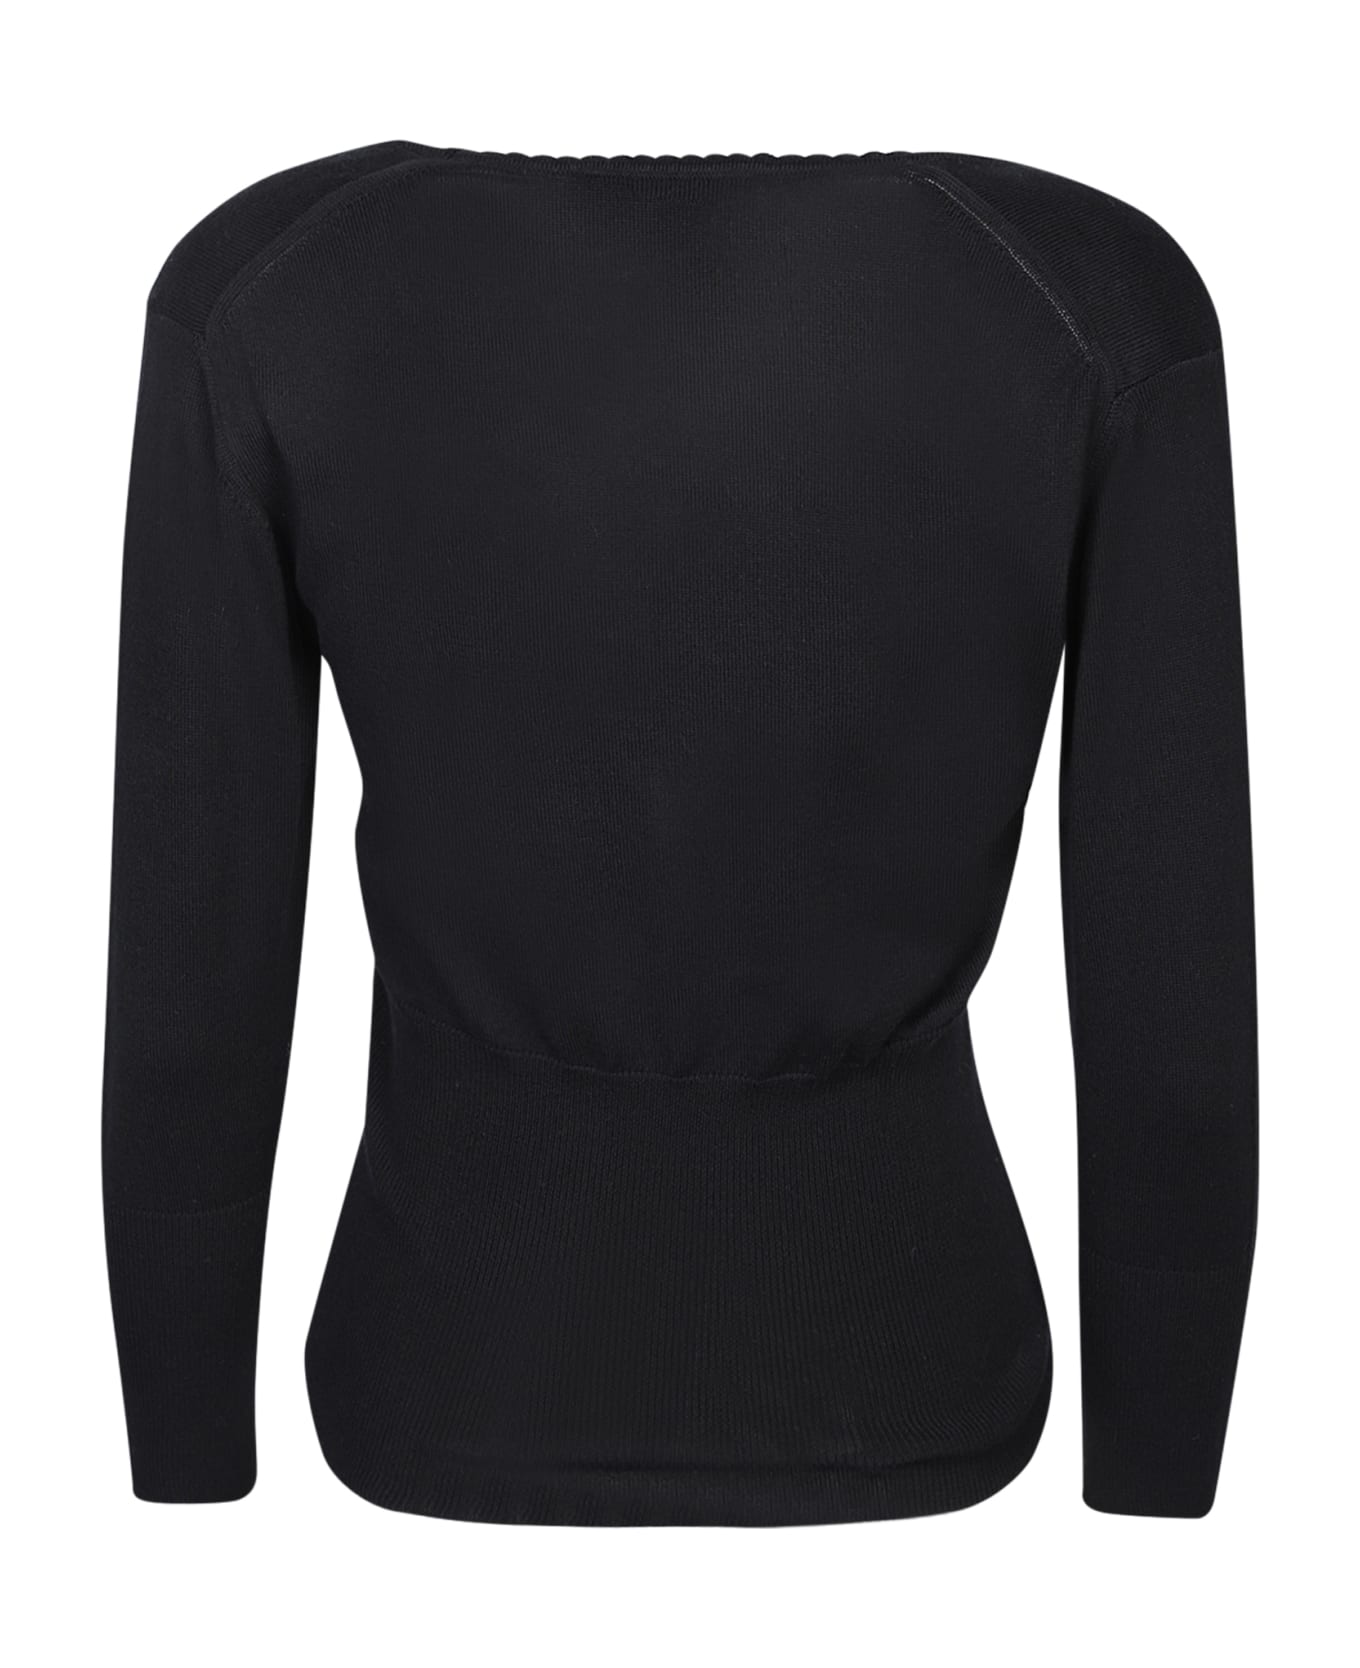 Vivienne Westwood Bebe Black Sweater - Black